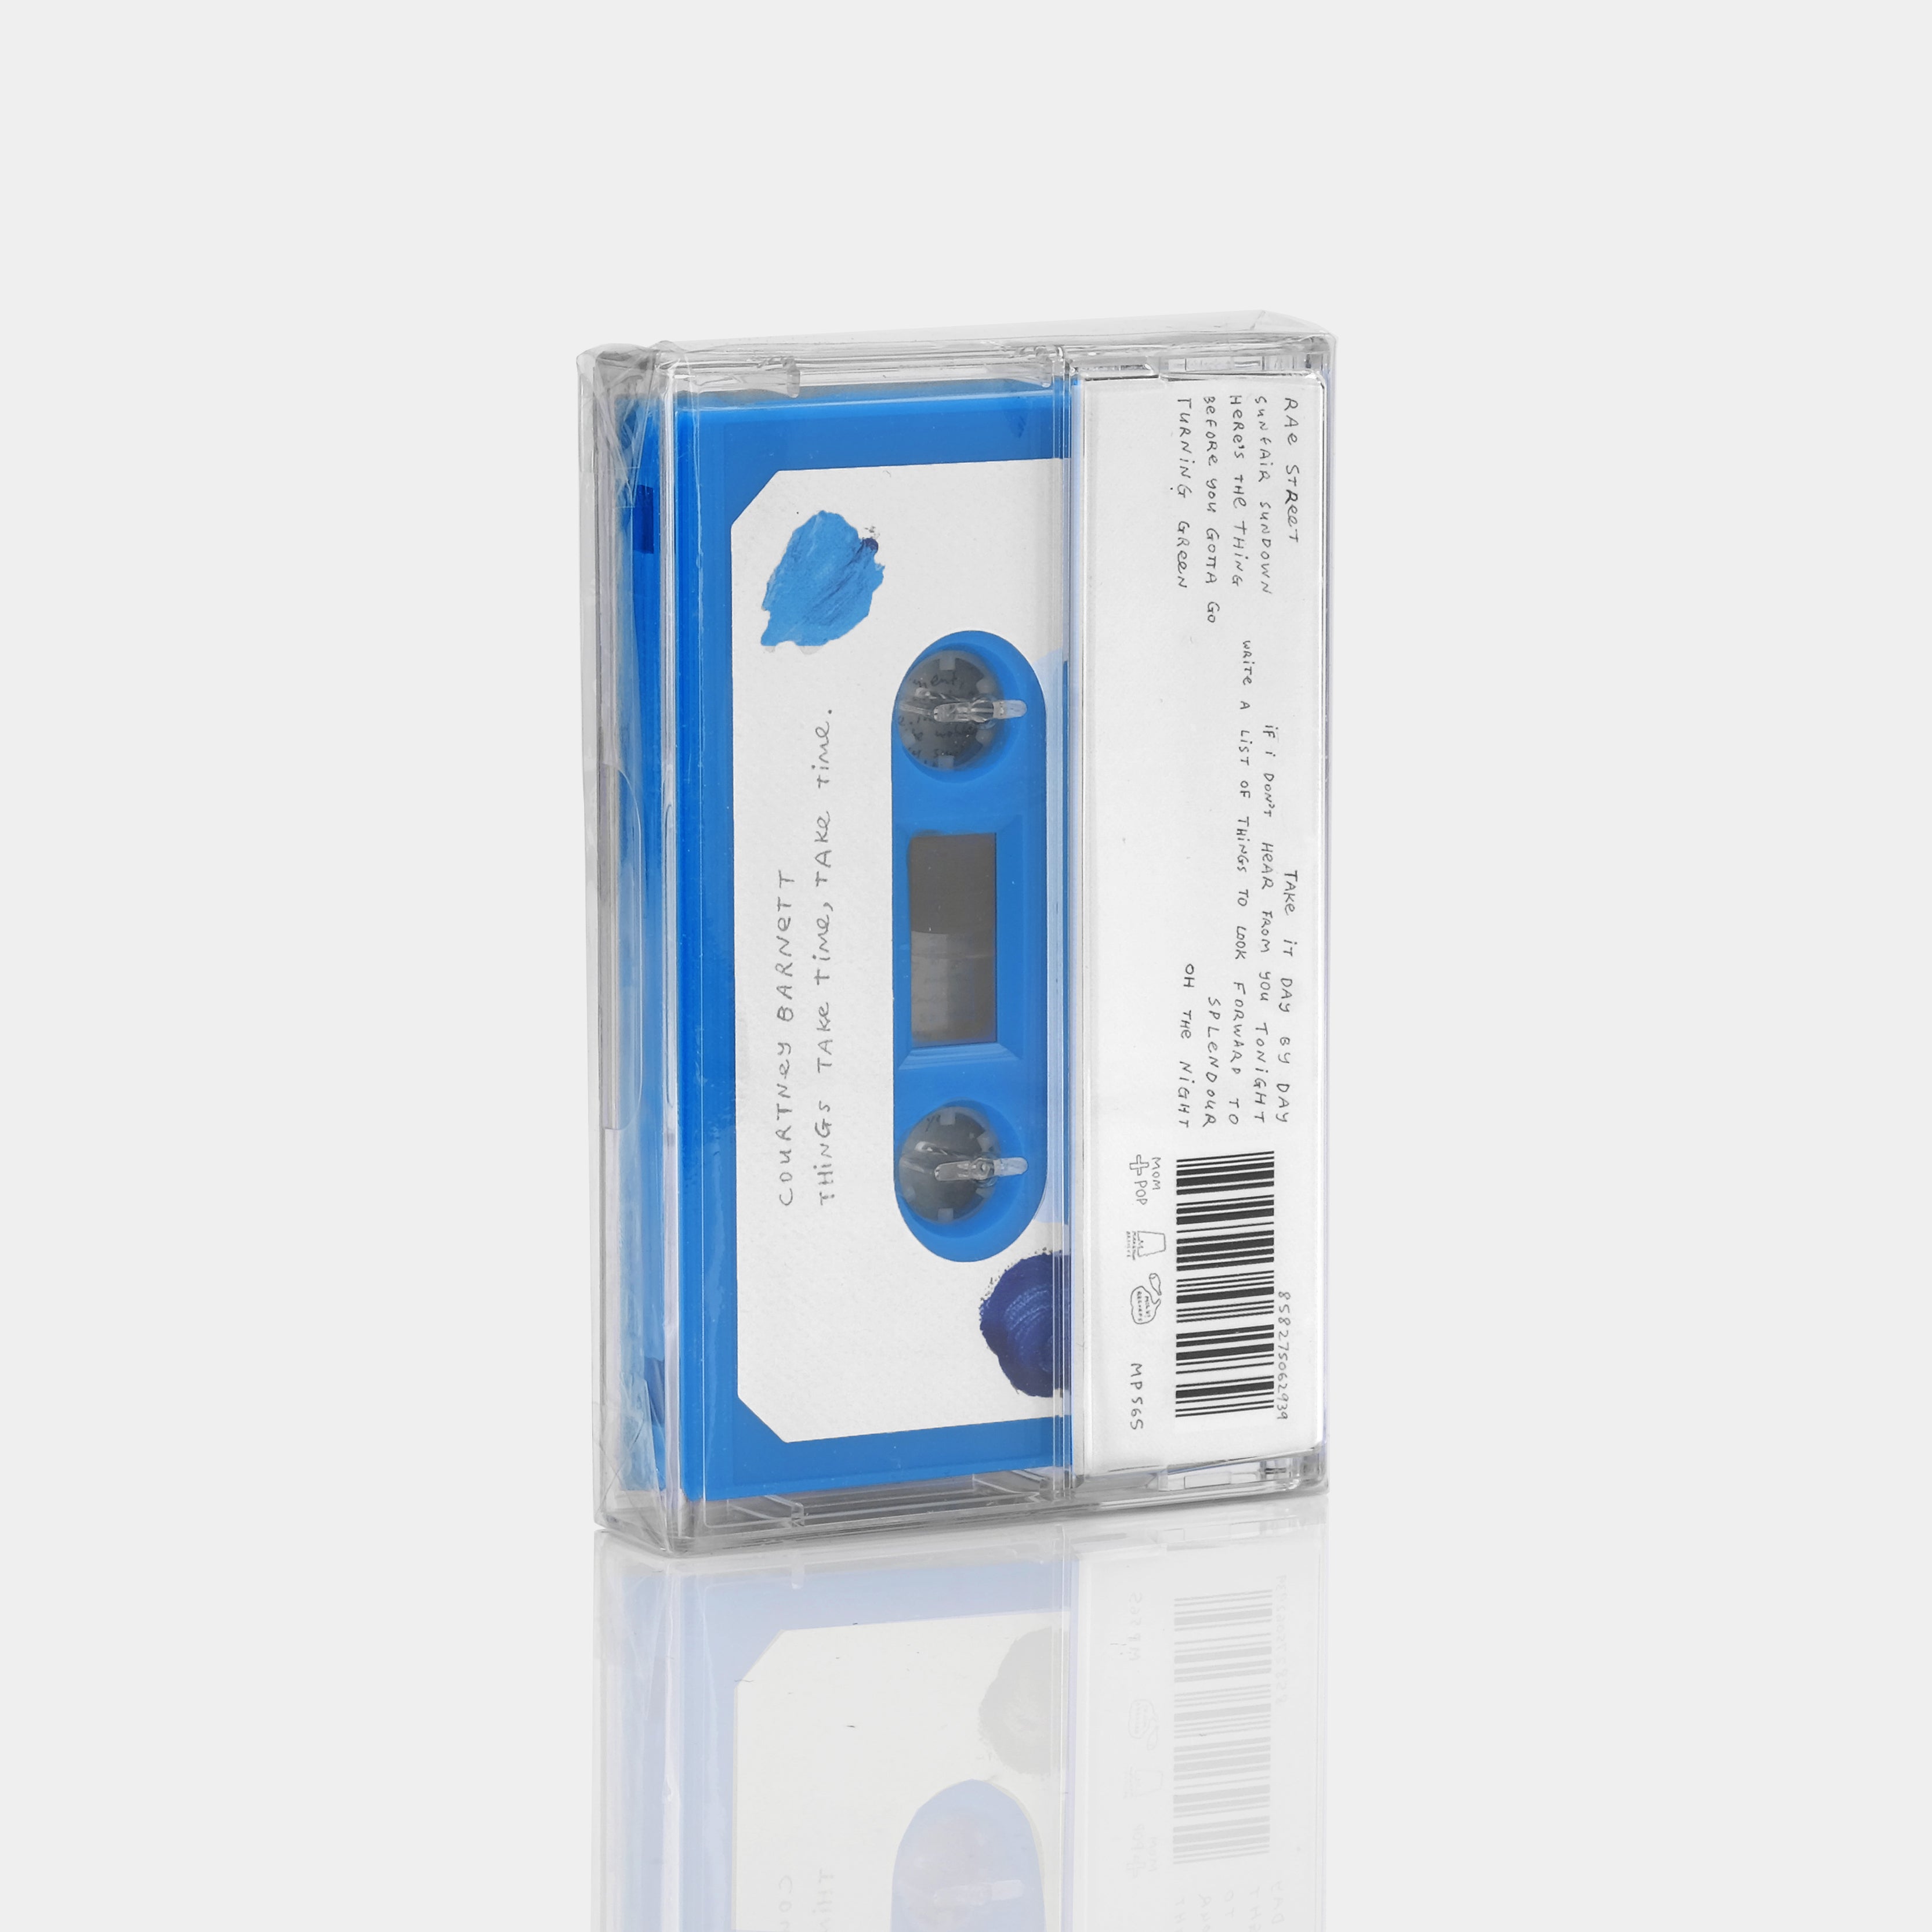 Courtney Barnett - Things Take Time, Take Time Cassette Tape